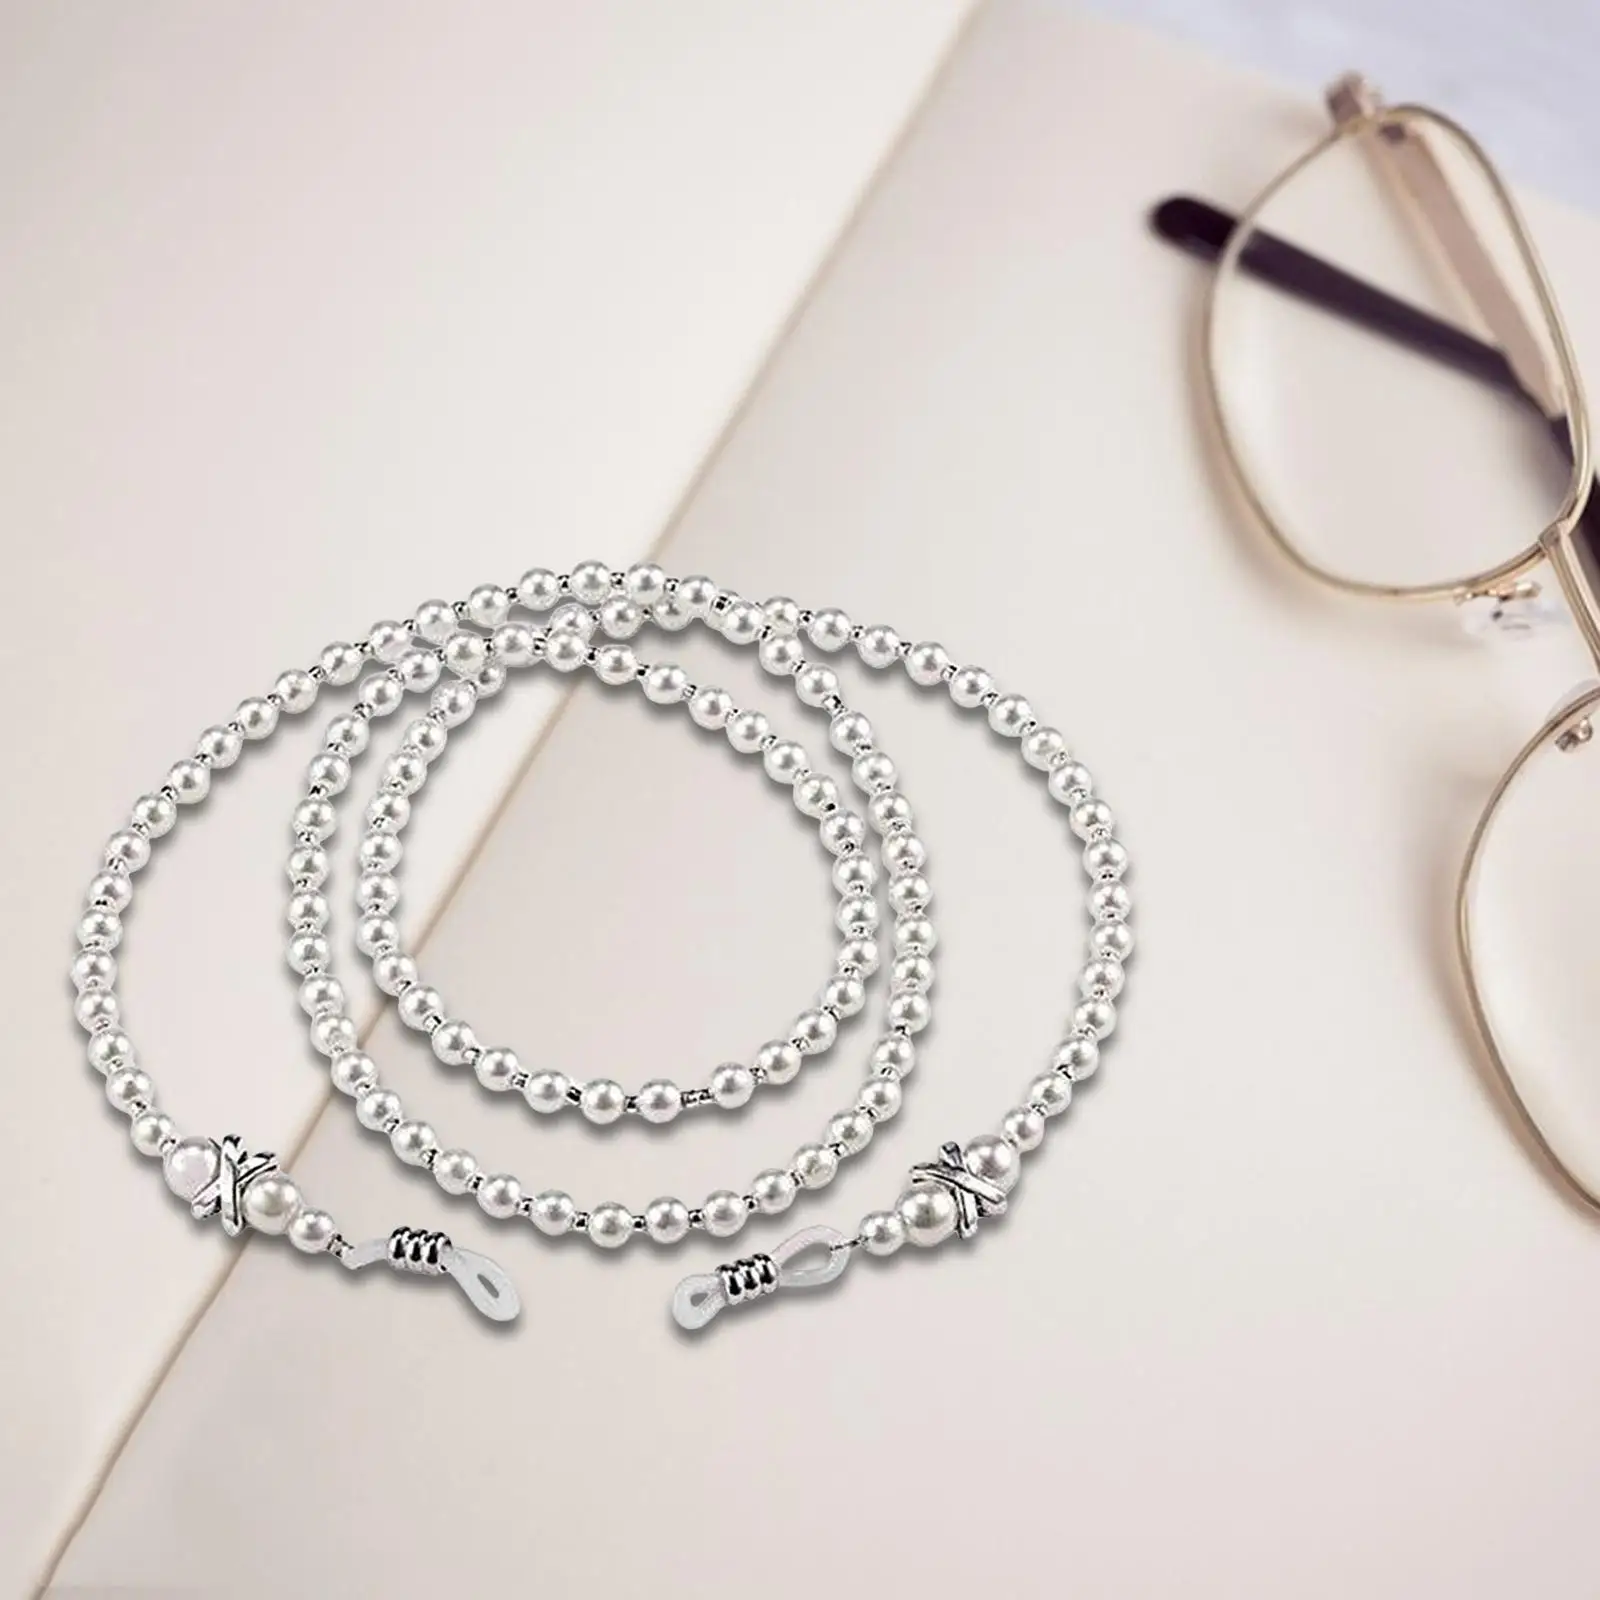 Beaded Eyeglass Chain Glasses Chain Necklace for Girls Eyewear Holder Glasses Holder Strap for Travel Anniversary Summer Beach